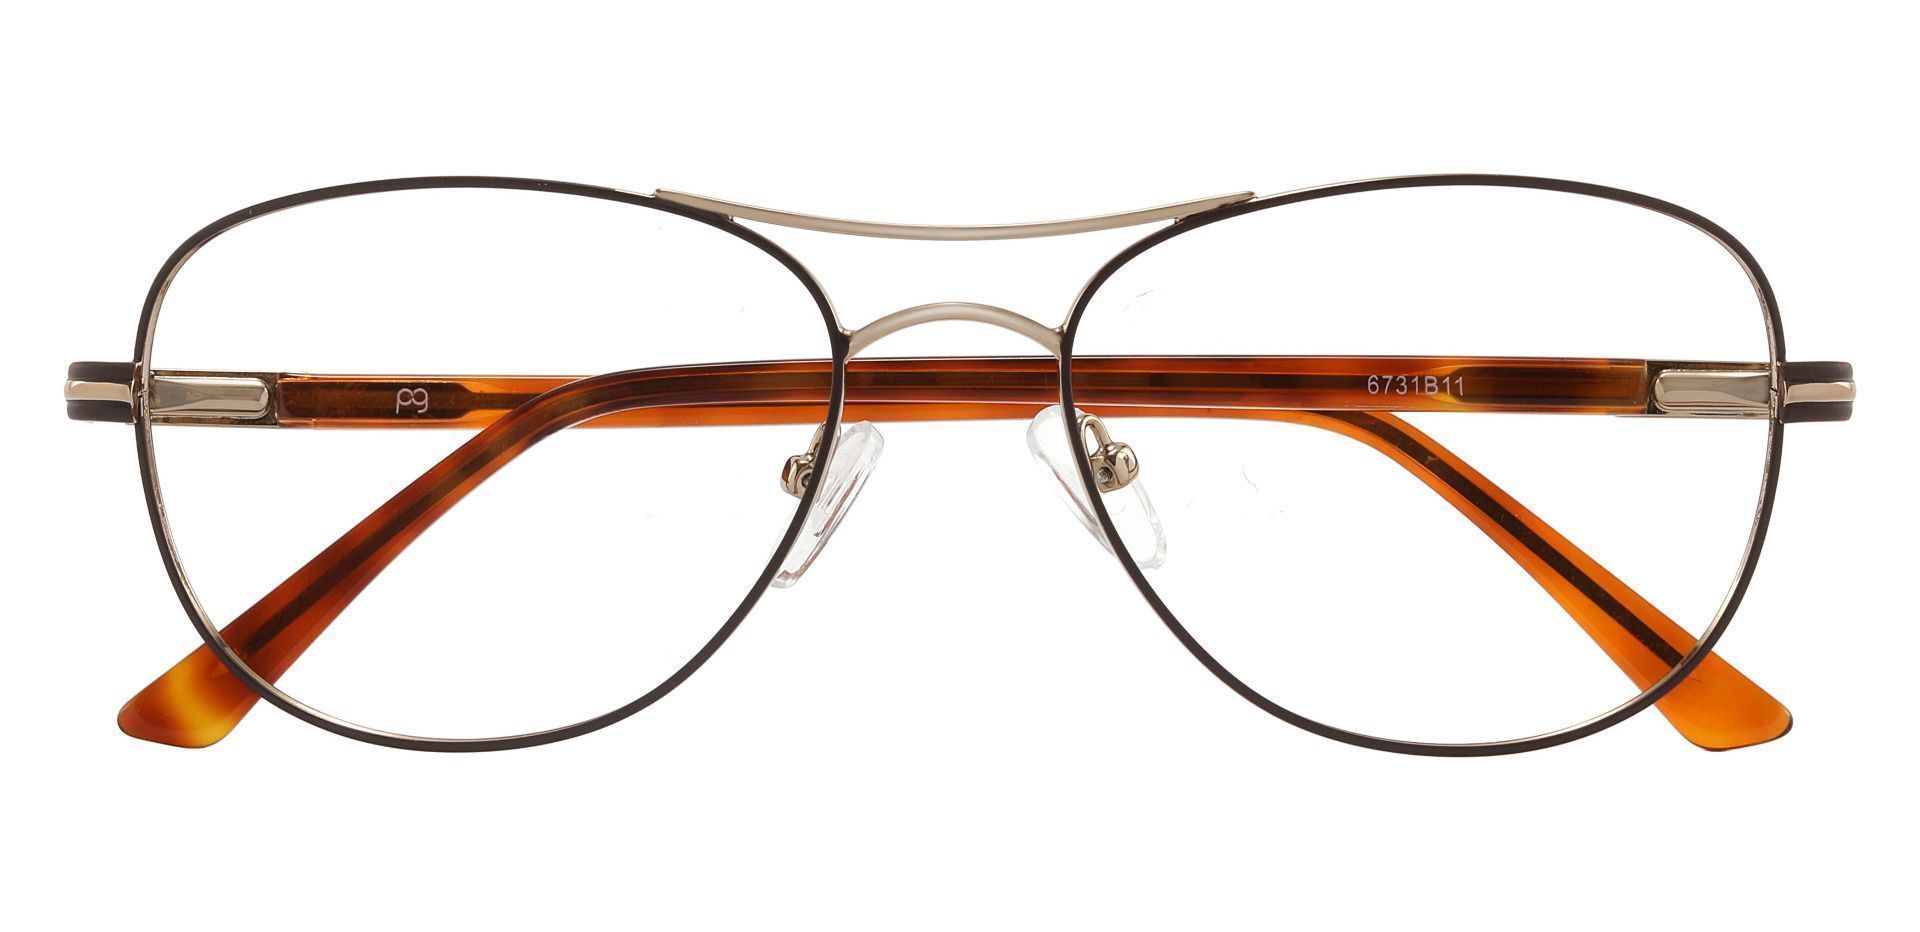 Reeves Aviator Eyeglasses Frame - Brown